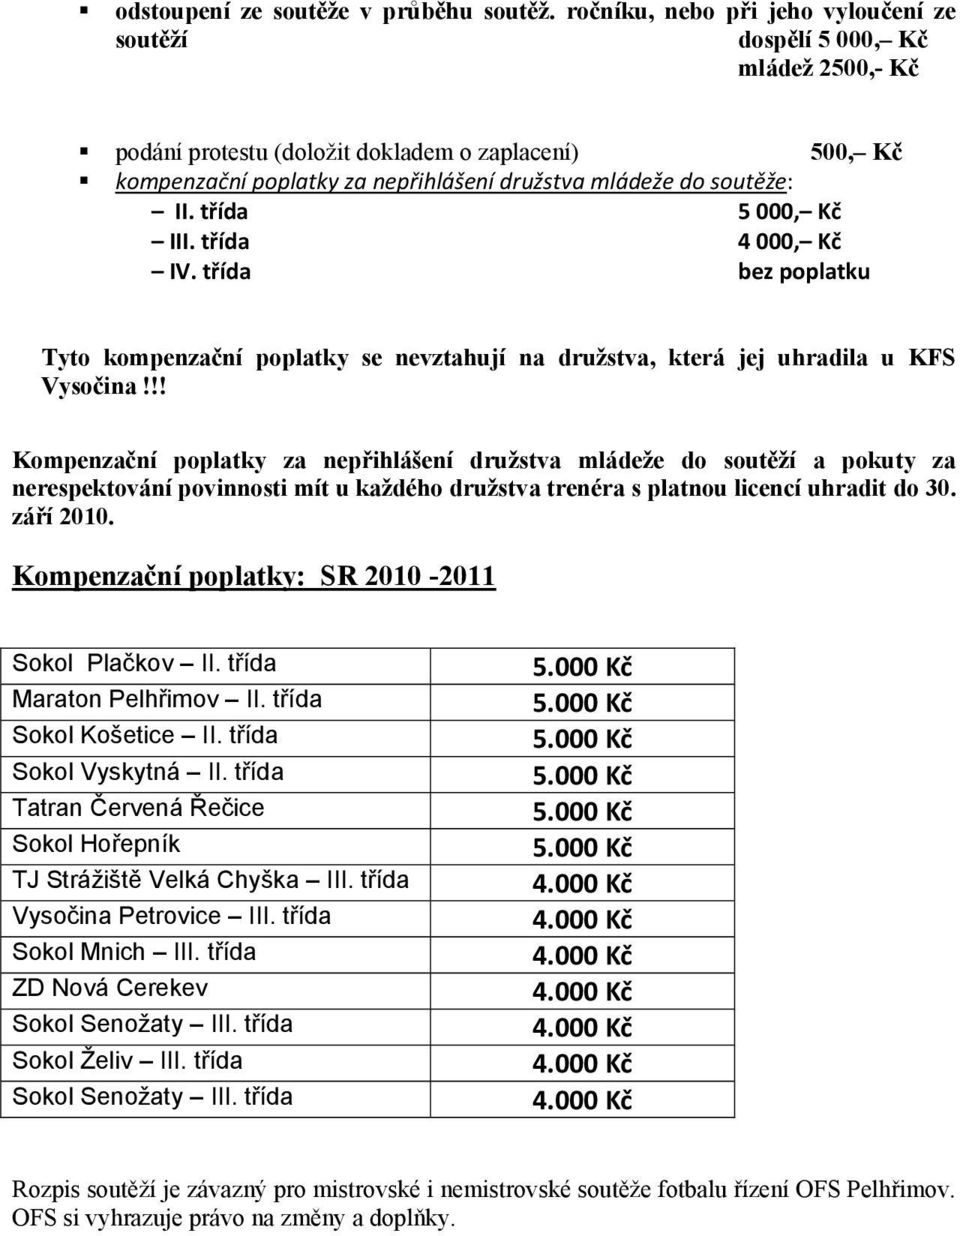 II. třída 5 000, Kč III. třída 4 000, Kč IV. třída bez poplatku Tyto kompenzační poplatky se nevztahují na družstva, která jej uhradila u KFS Vysočina!